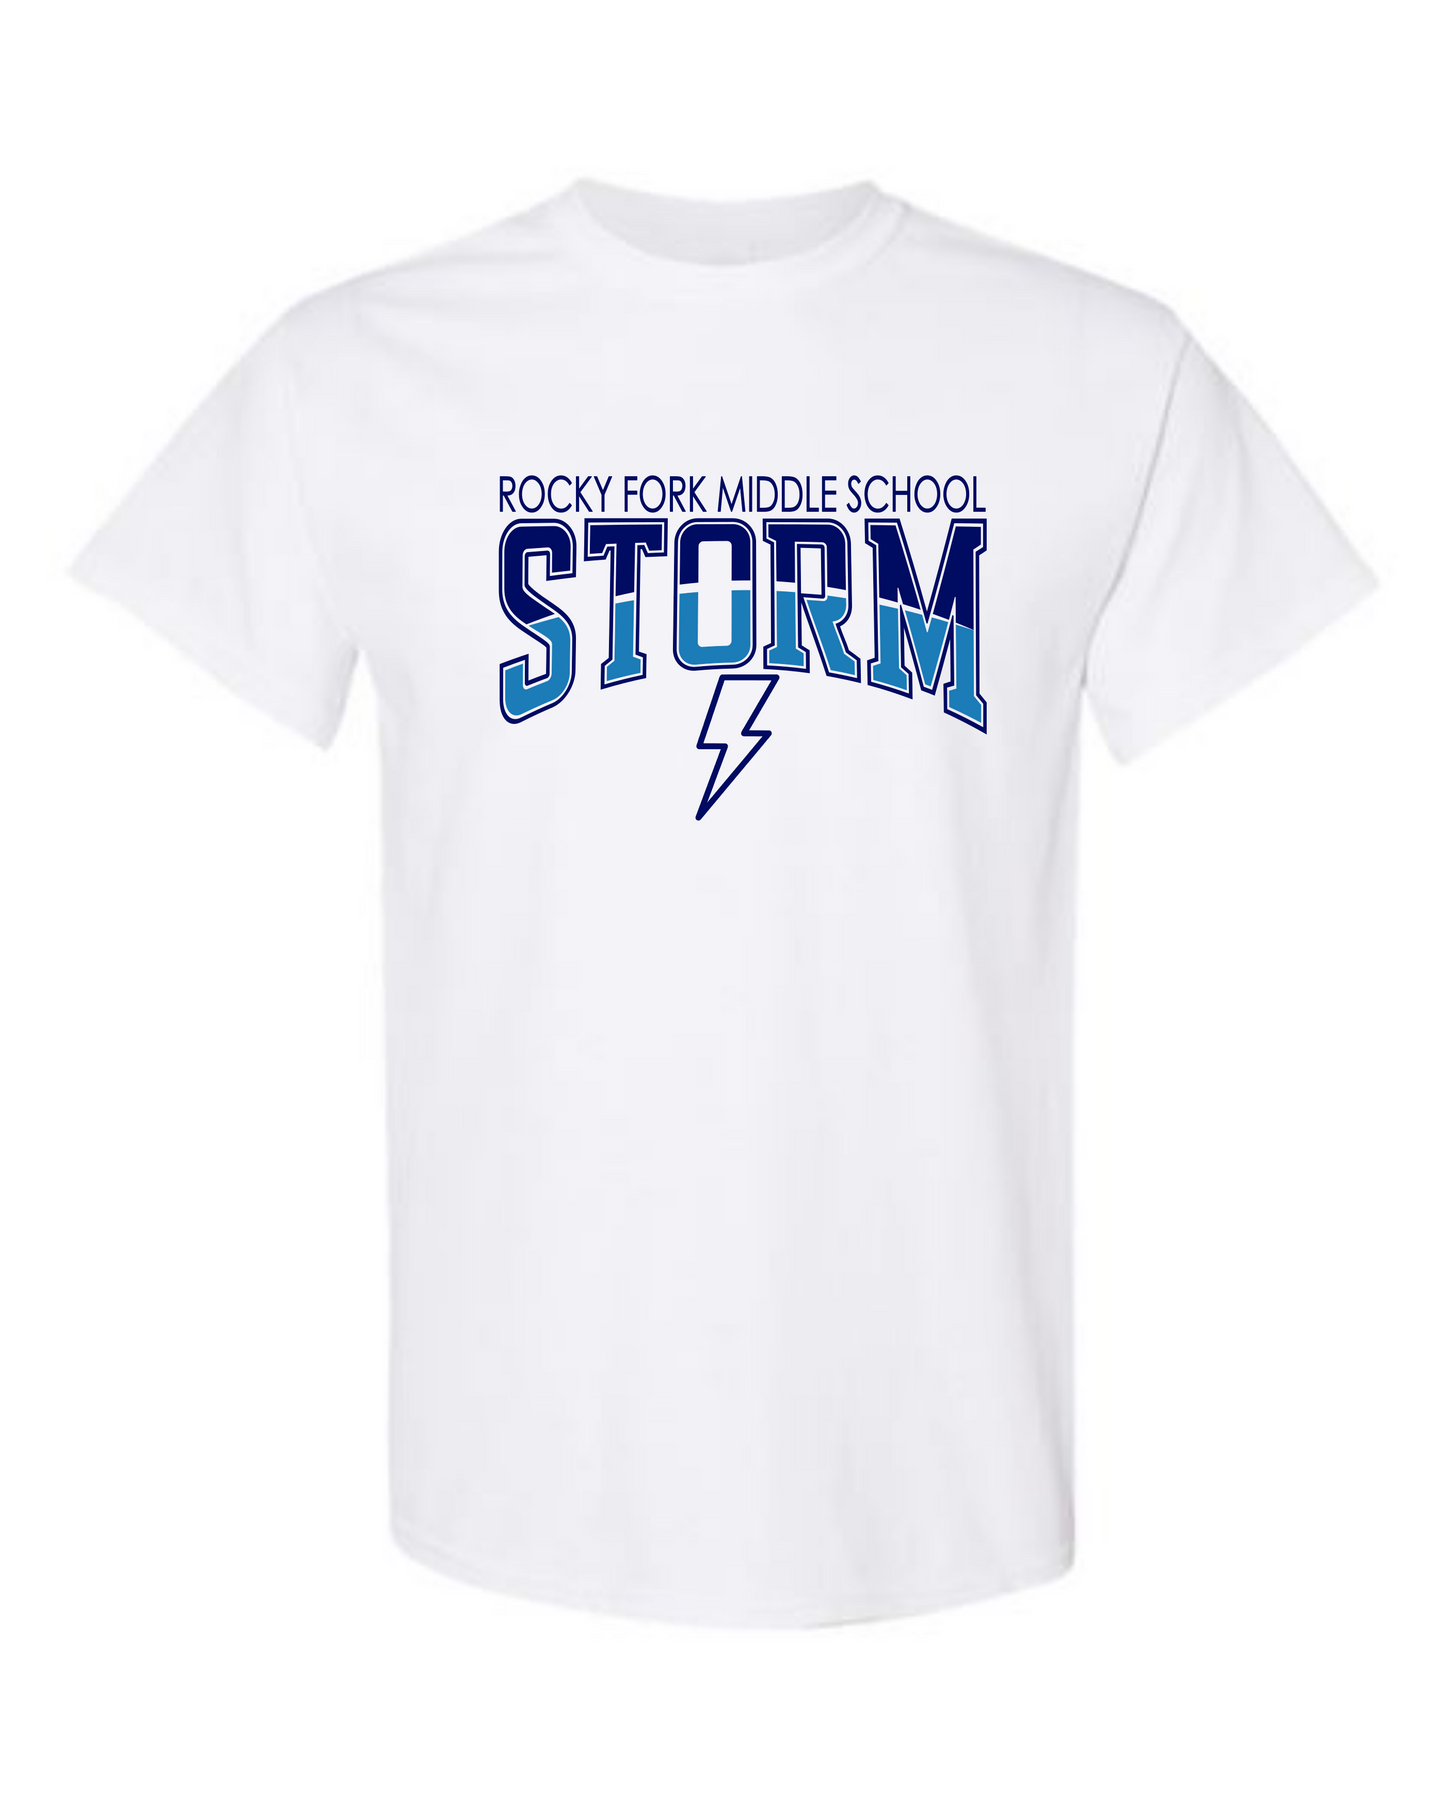 Two Tone Storm Tshirt